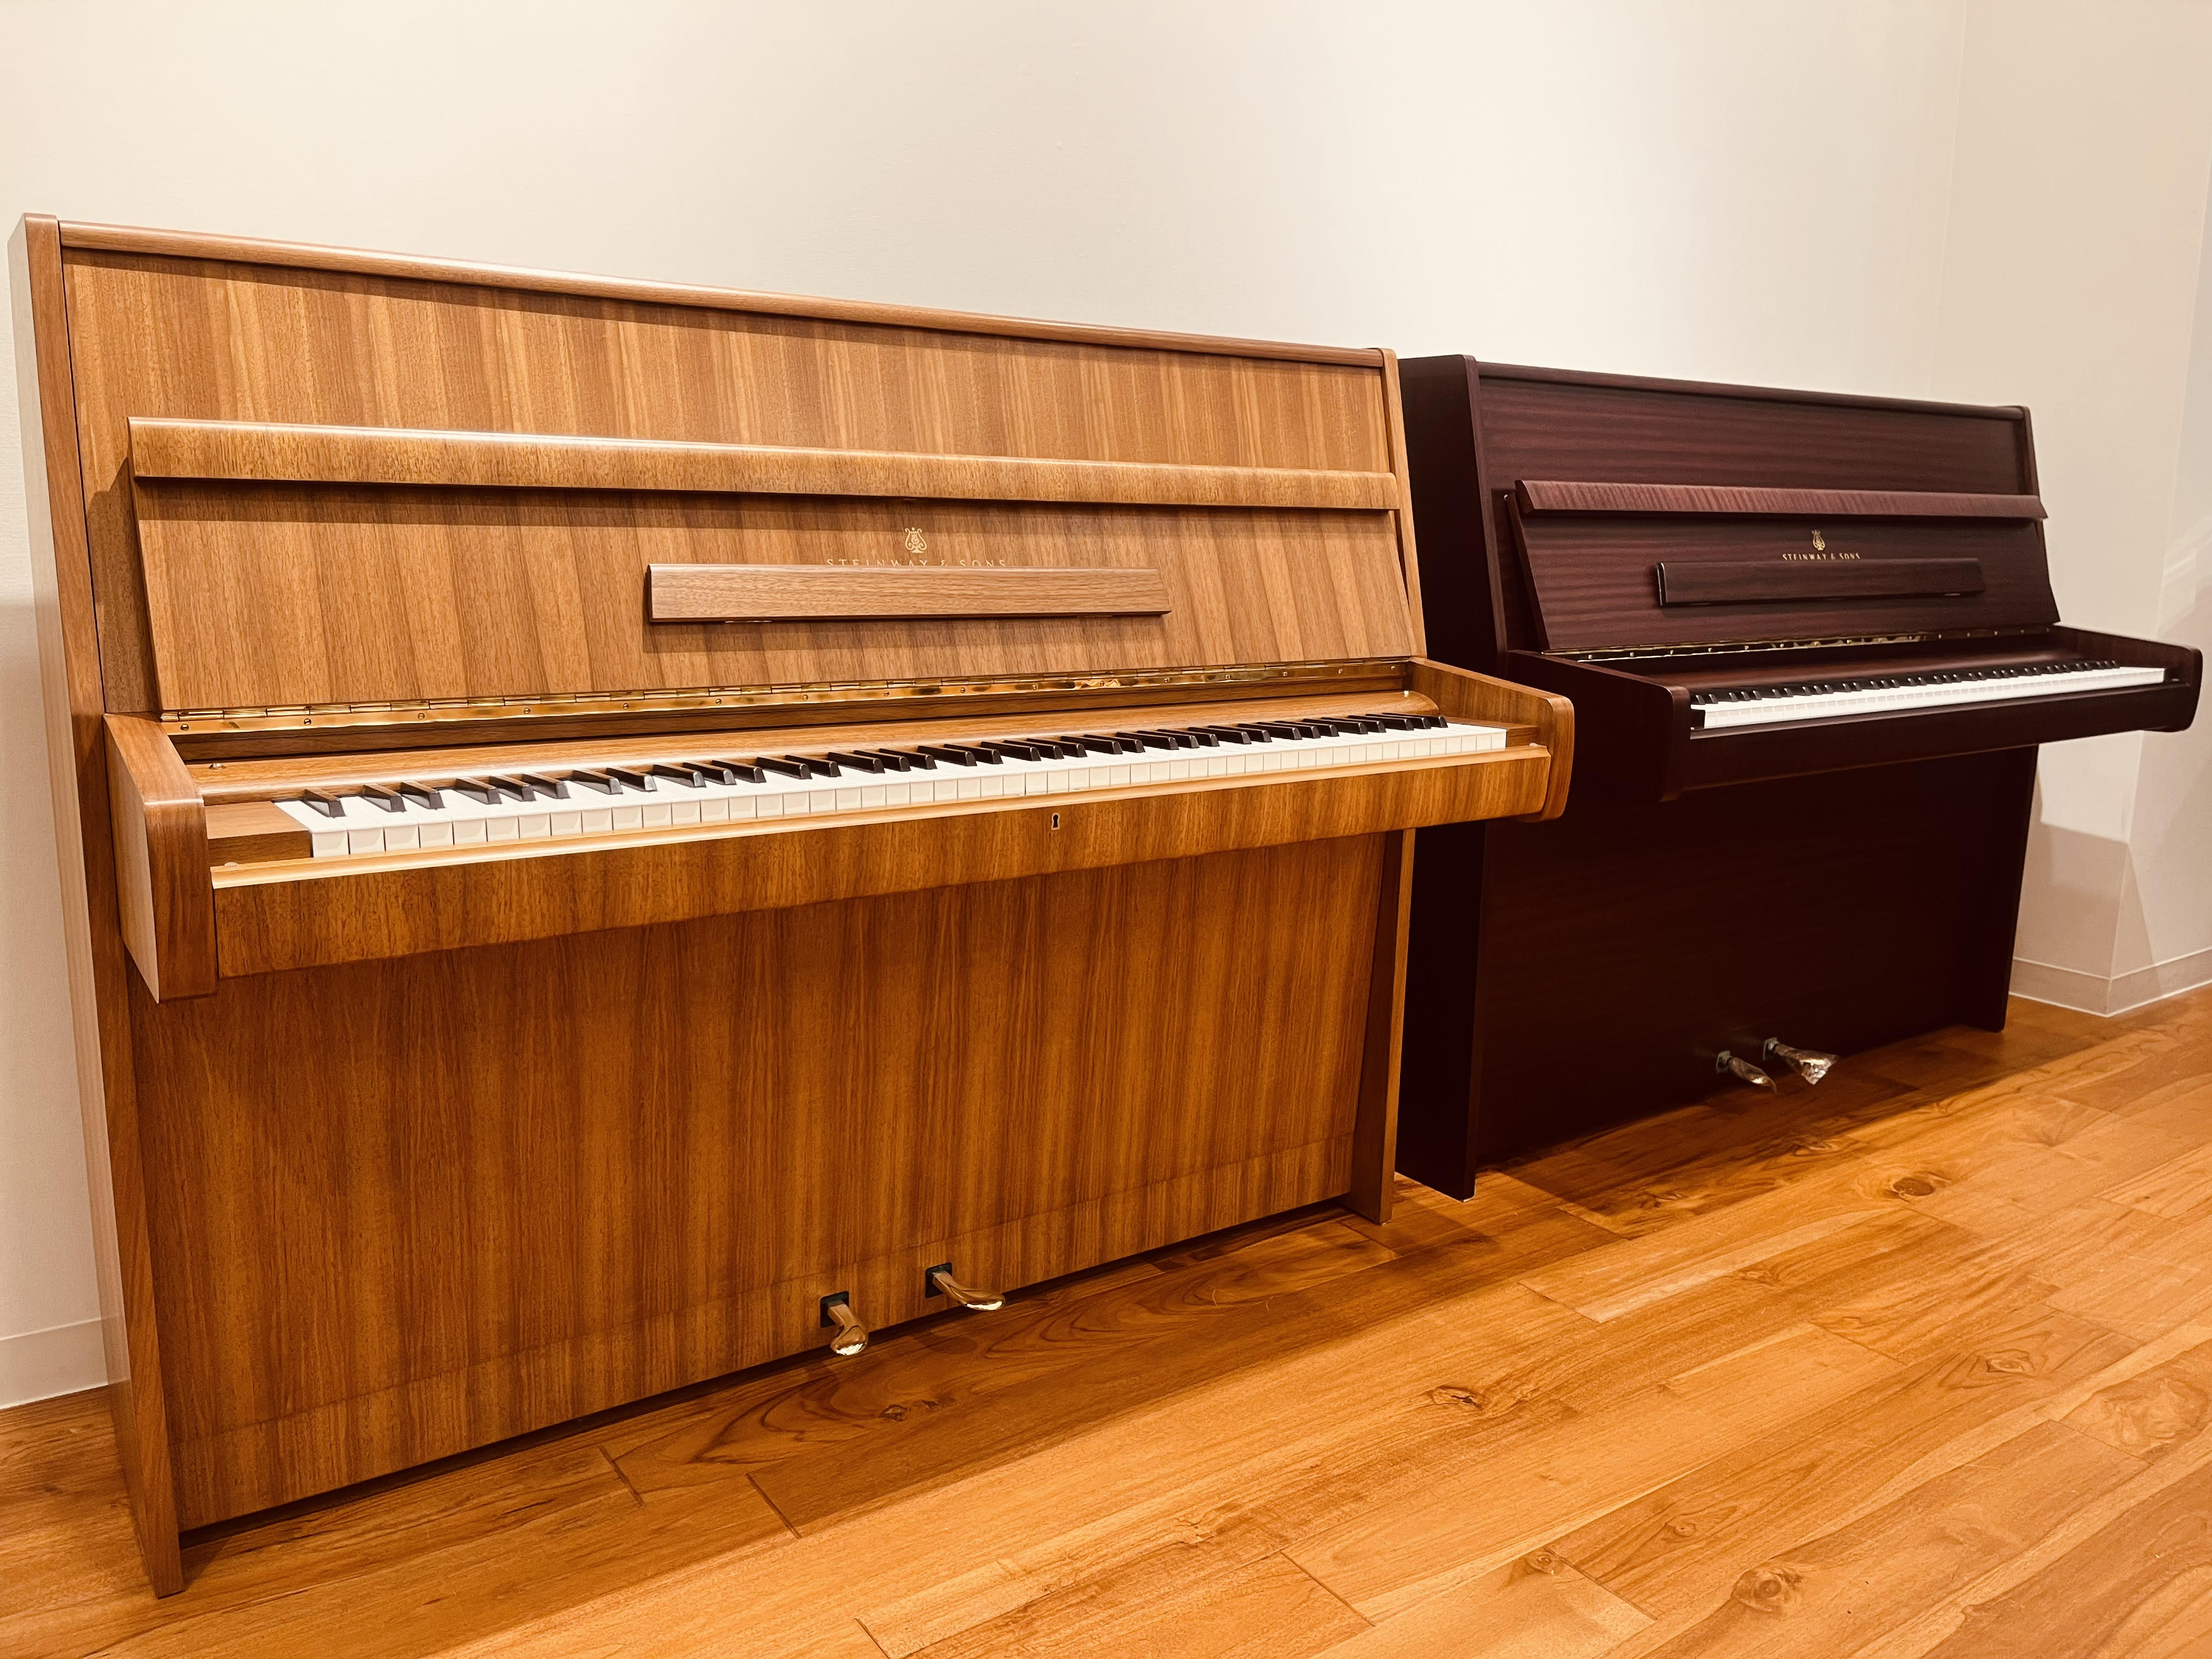 島村楽器イオンモール広島府中店では、スタインウェイのアップライトピアノを代表するモデル「Z-114」を複数から選定頂けます。かつてジョン・レノンが同モデルを愛用しており、スタインウェイの気品あふれる華やかな音色が特徴的なモデルです。手作業による製造のため、1台1台の個性が全く異なることも特徴。いずれ […]